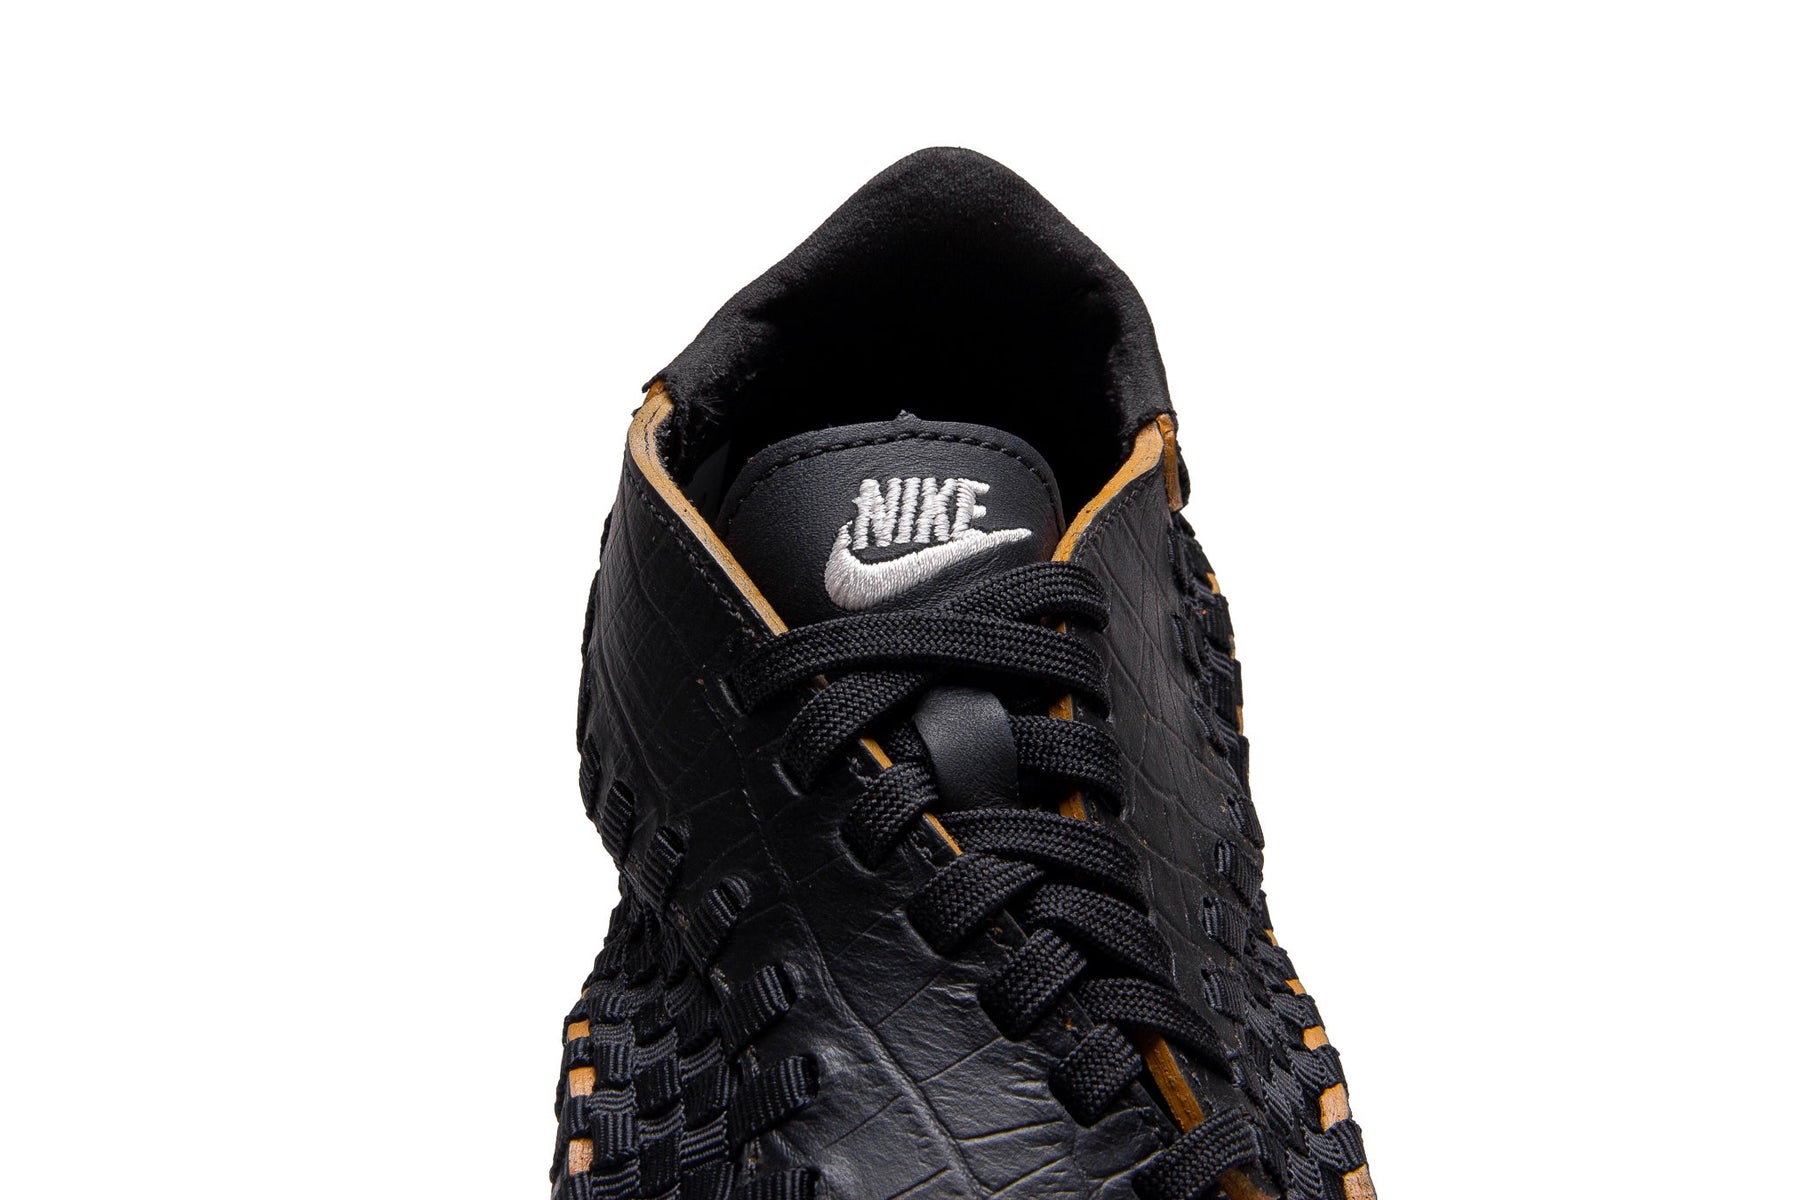 WMNS Nike Air Footscape PRM "Black"